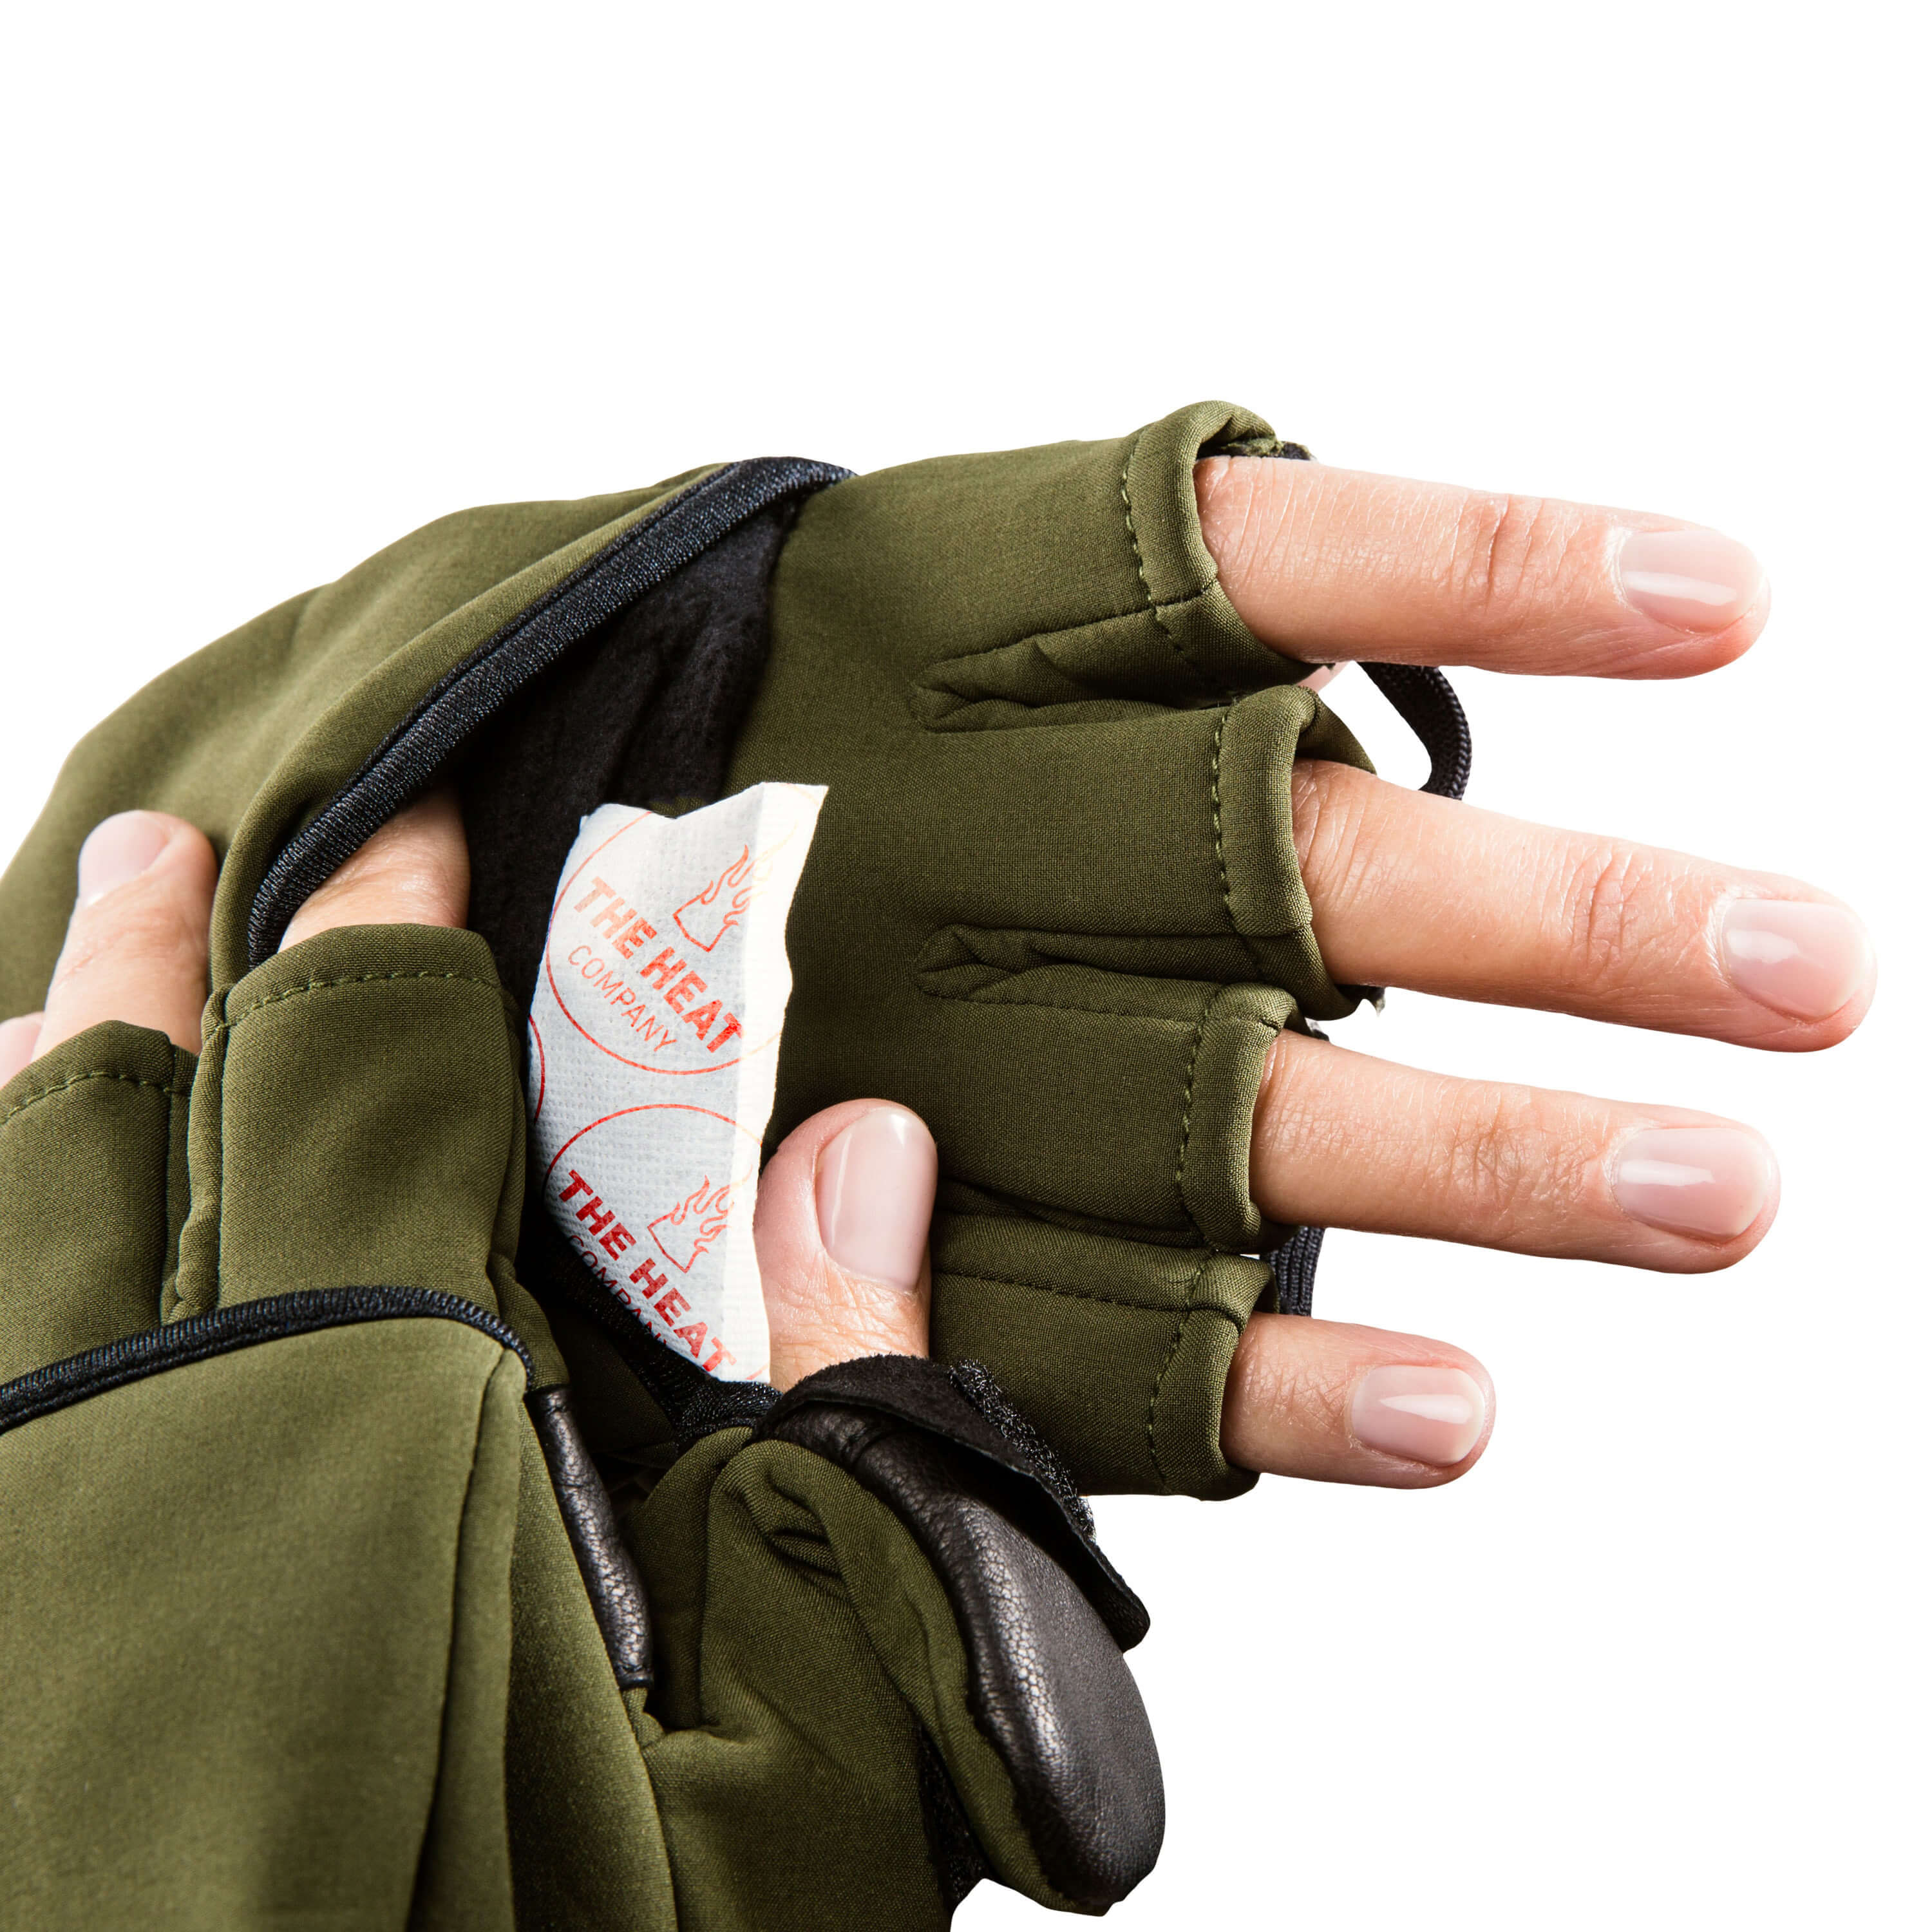 Hot Hands Hand Warmers Hot Hands Packs Pocket Heat Gloves 